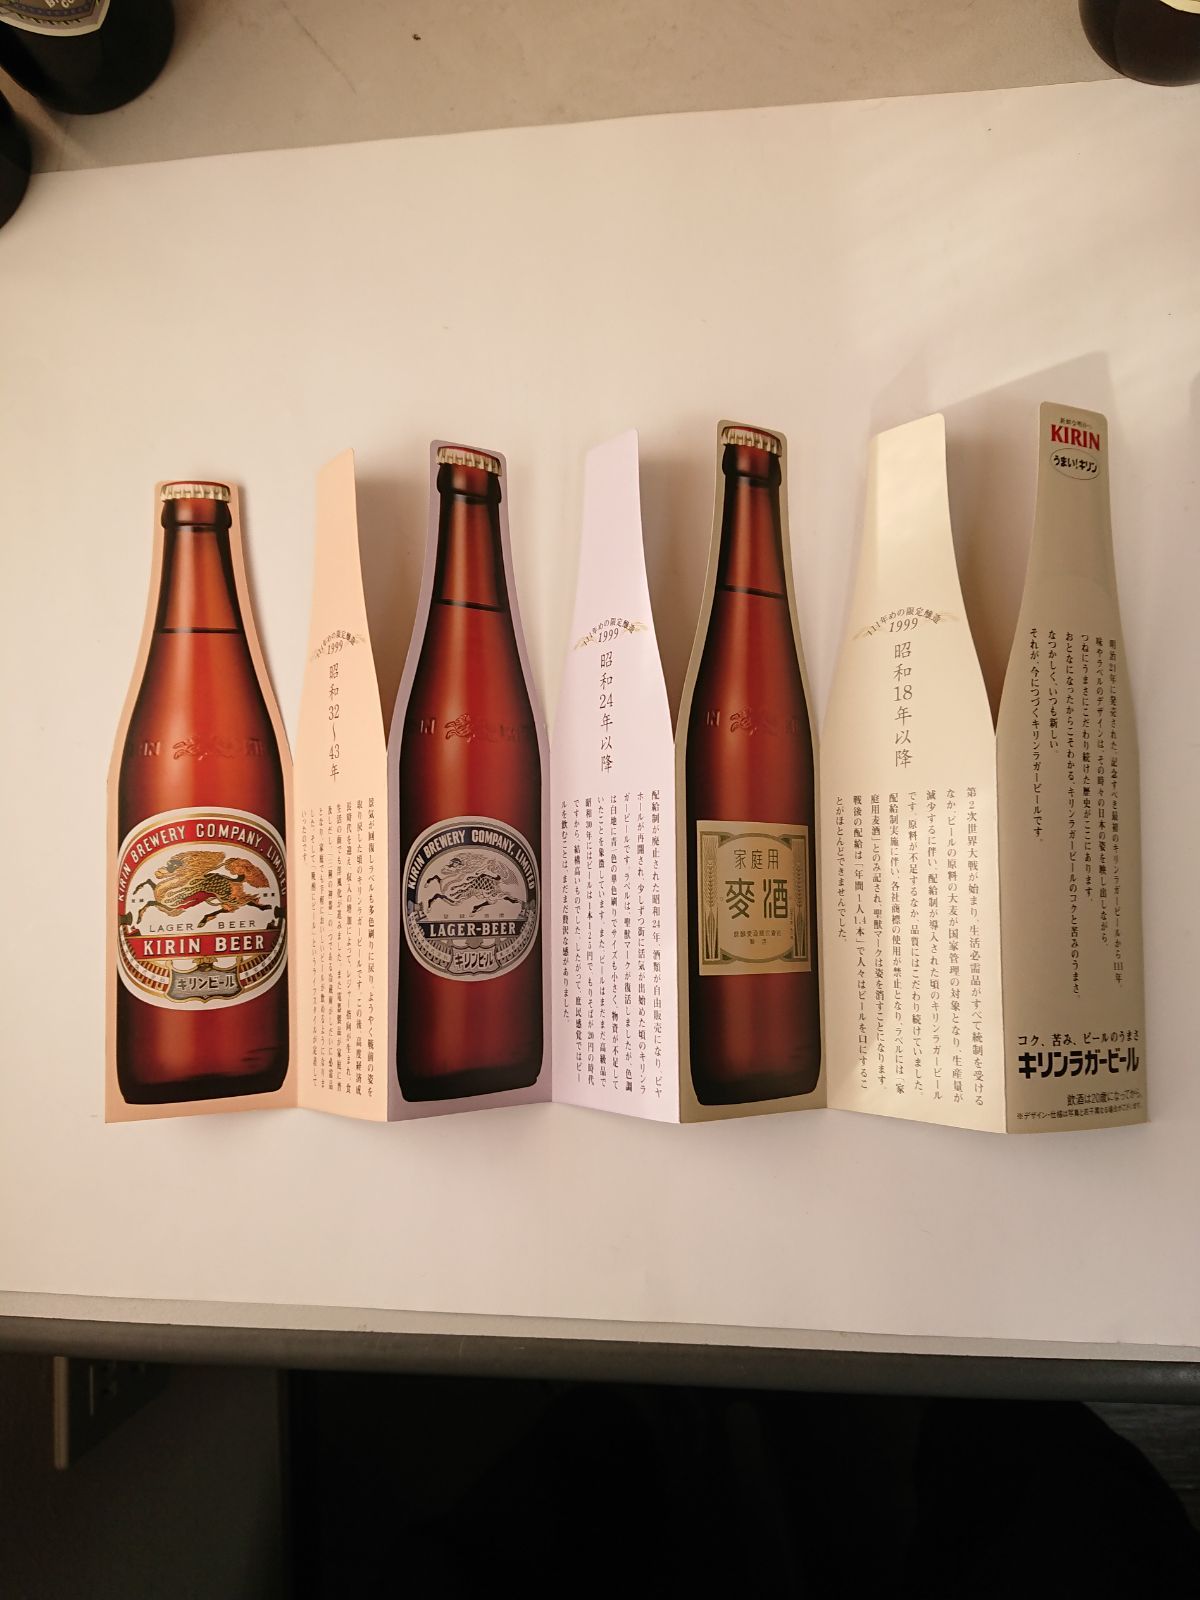 キリンラガービール・復刻ラガー 6本 - メルカリ